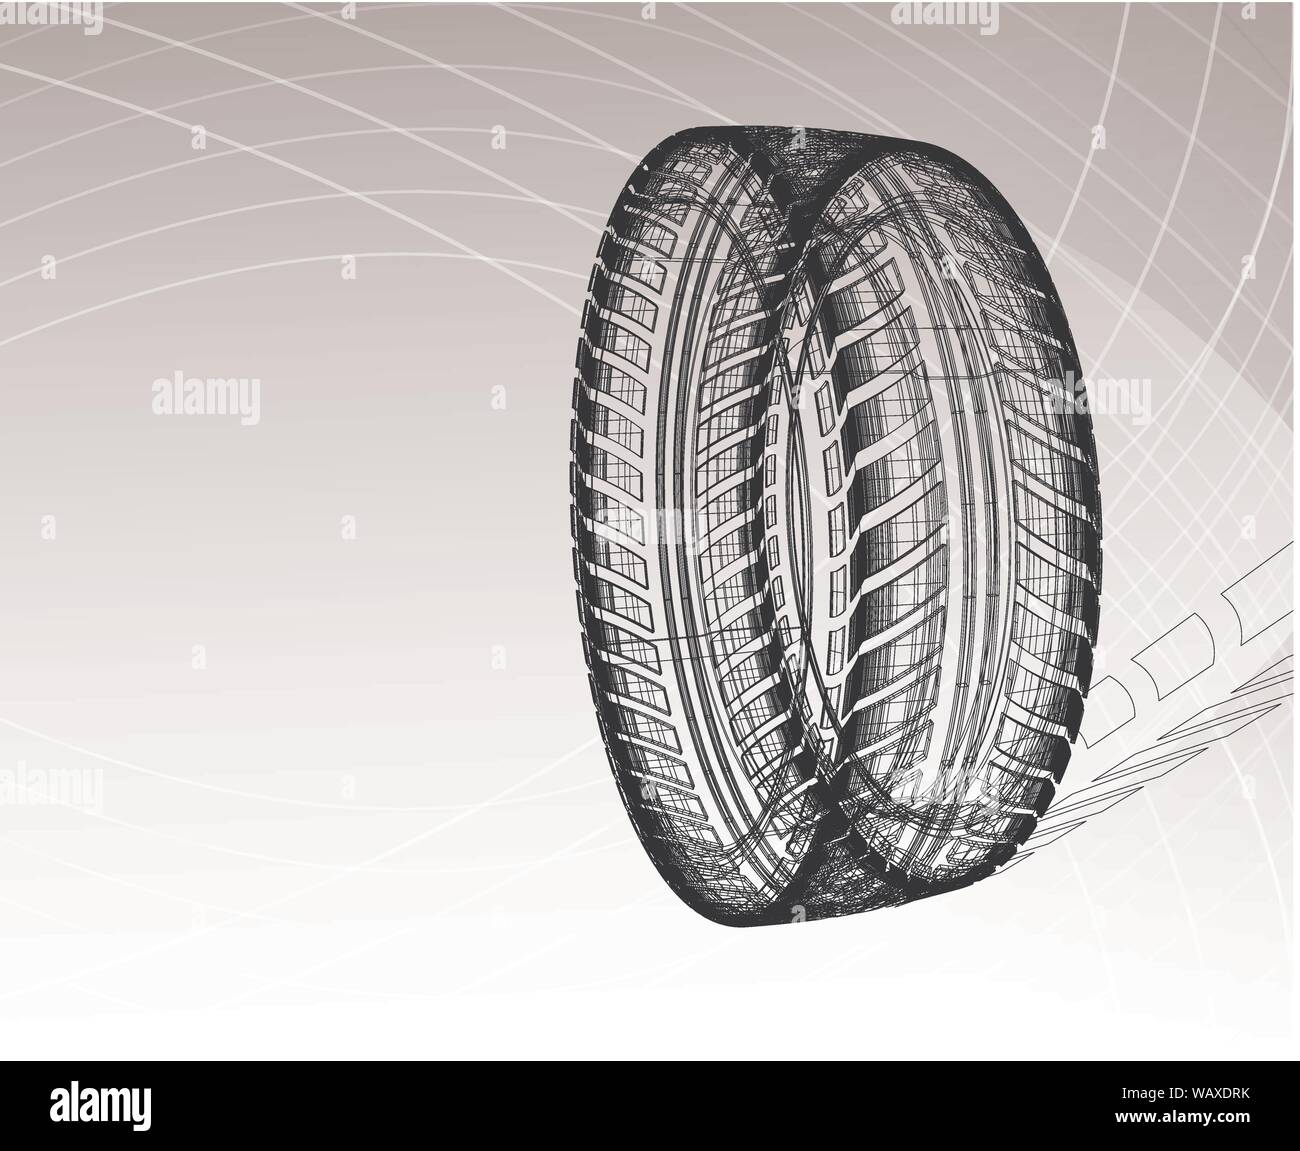 Auto Reifen mit Reifenspuren auf einem hellgrauen Hintergrund. Vektor blueprint Abbildung Stock Vektor